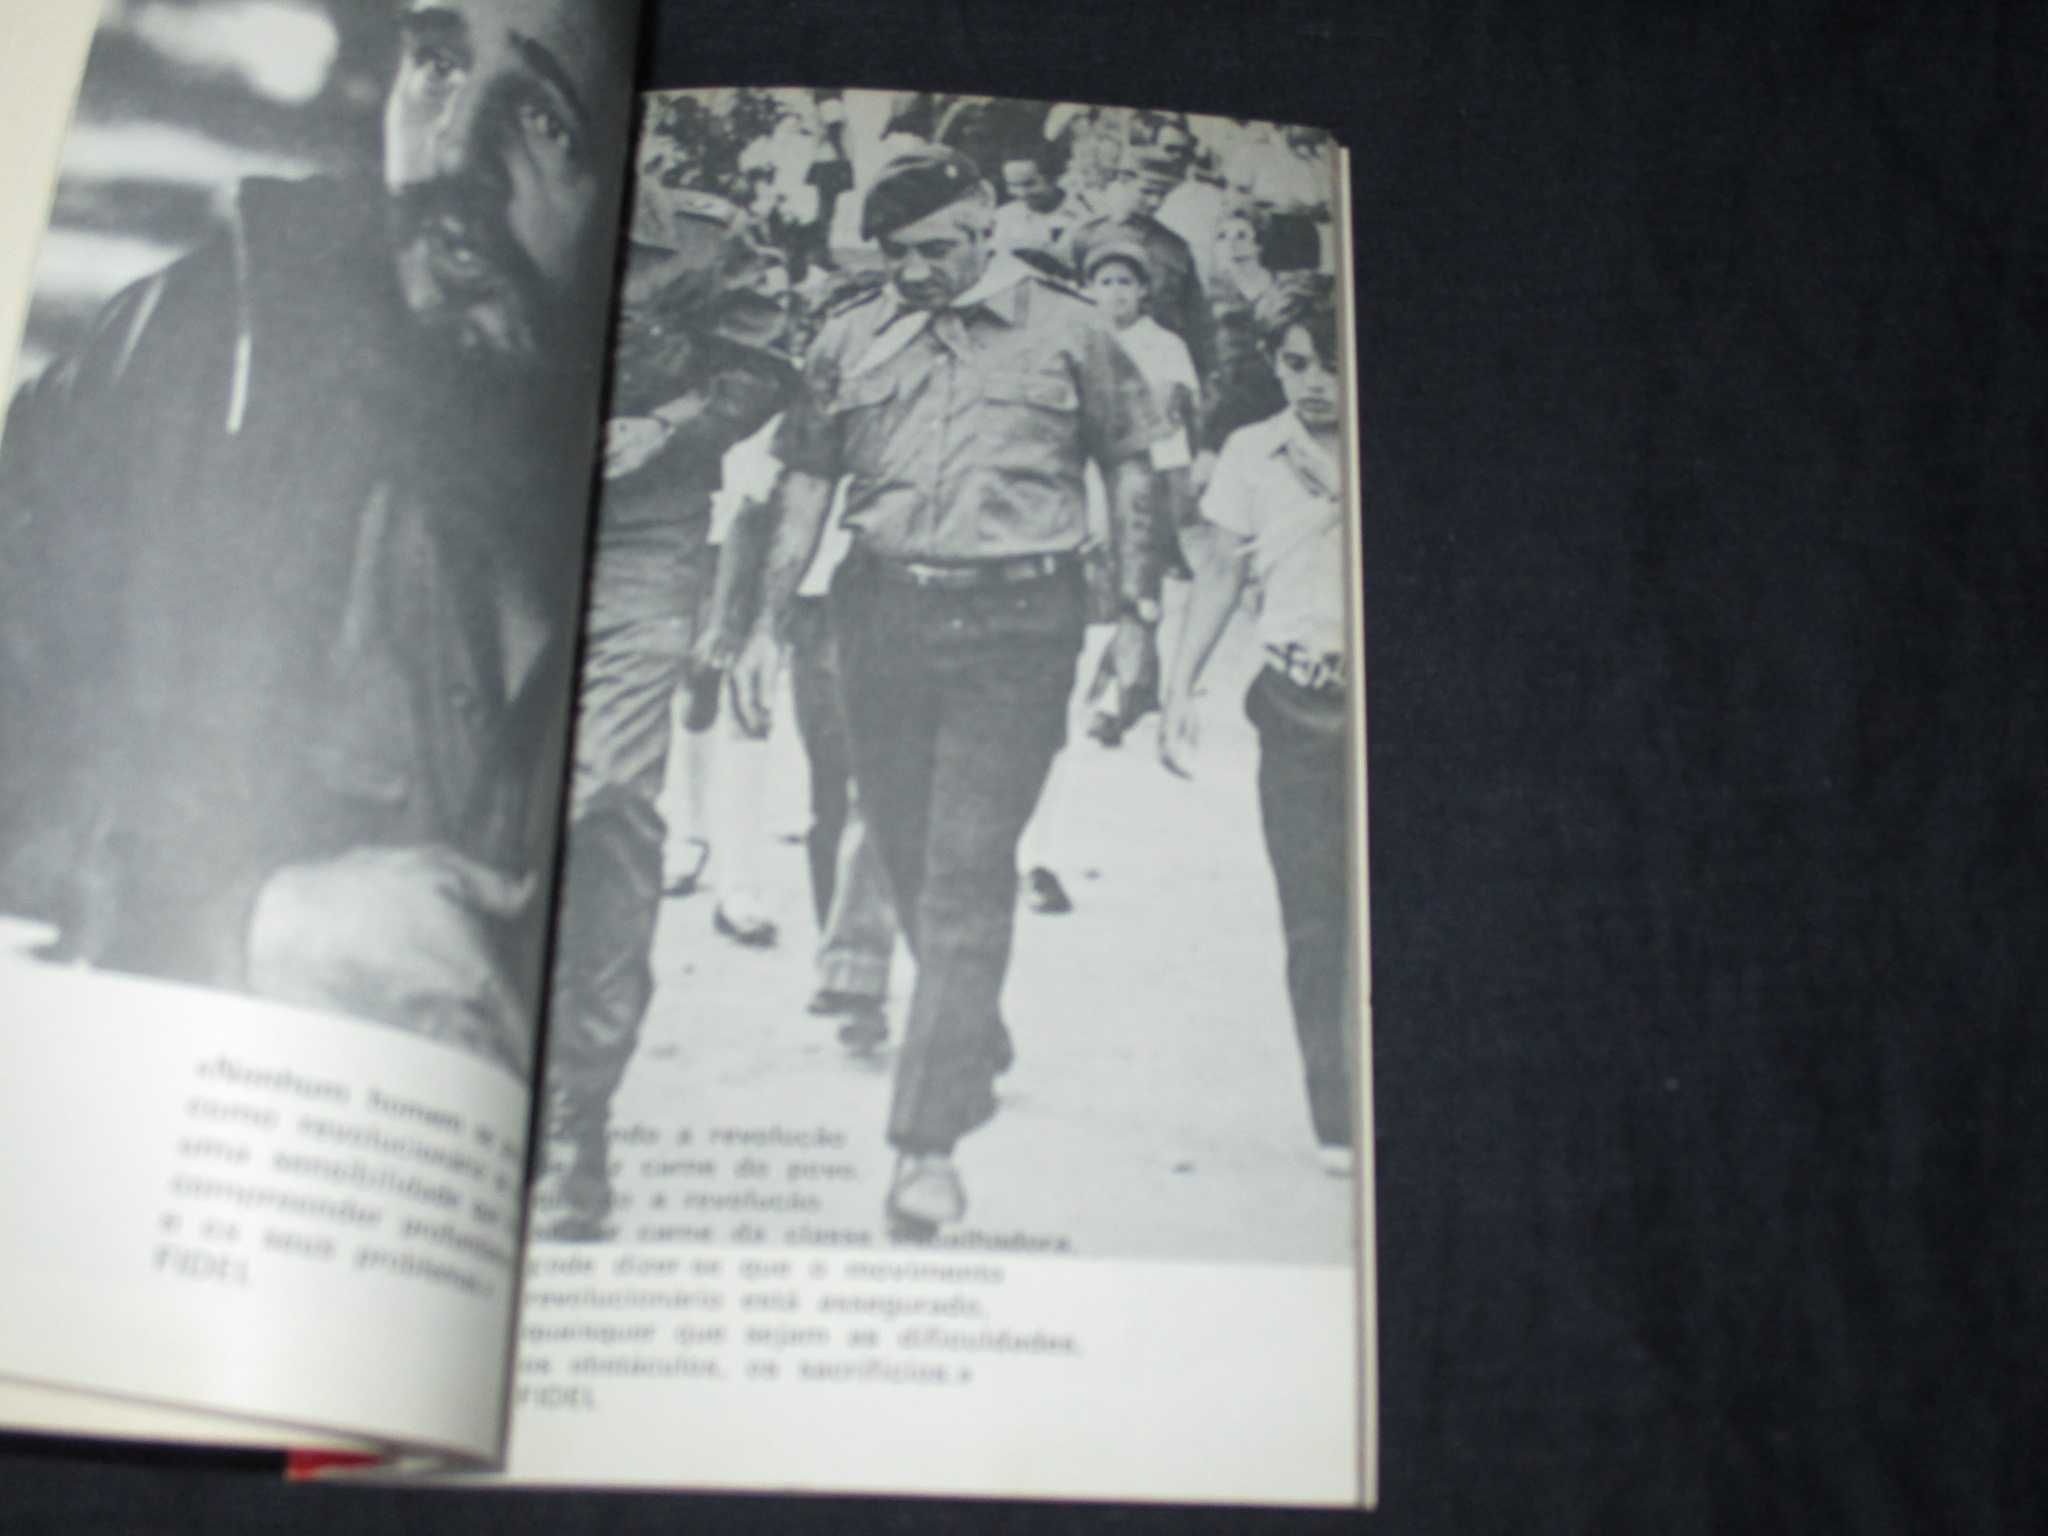 Livro Fazer a Revolução Fidel Castro Editorial Fronteira